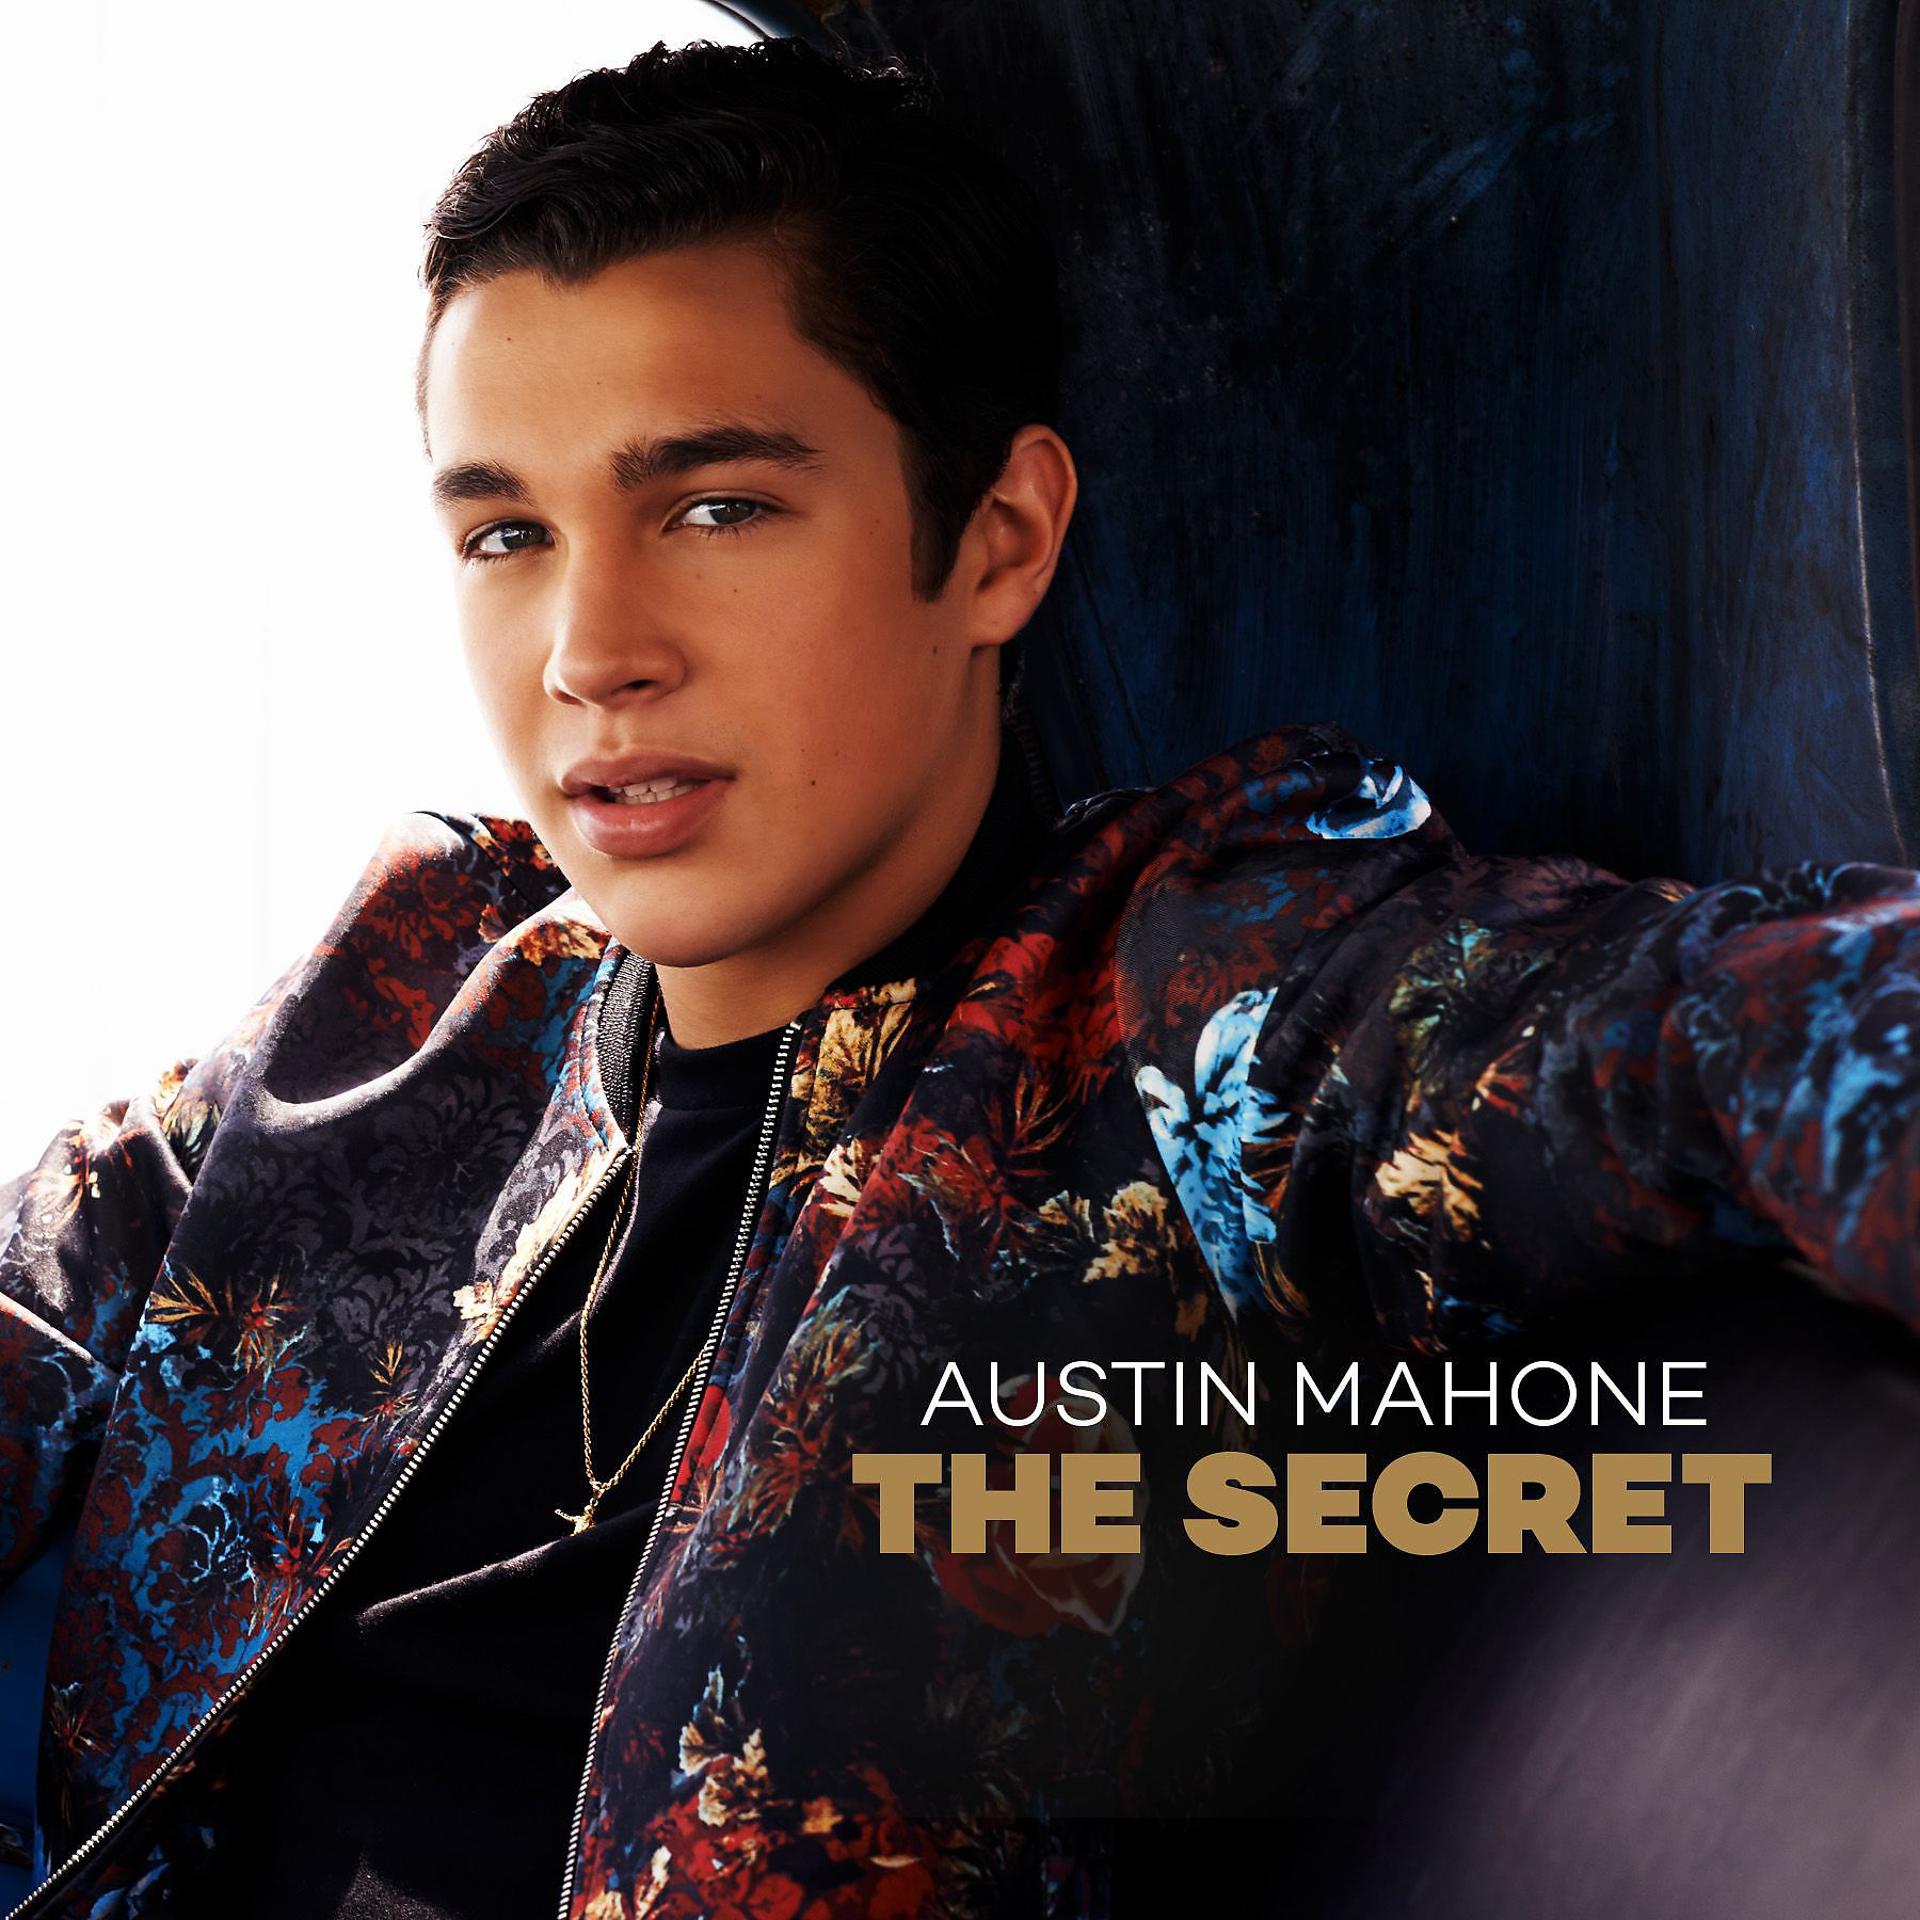 Austin Mahone. Austin Mahone "the Secret, CD". Pretty and young Austin Mahone. Mmm yeah Остин Махоун.